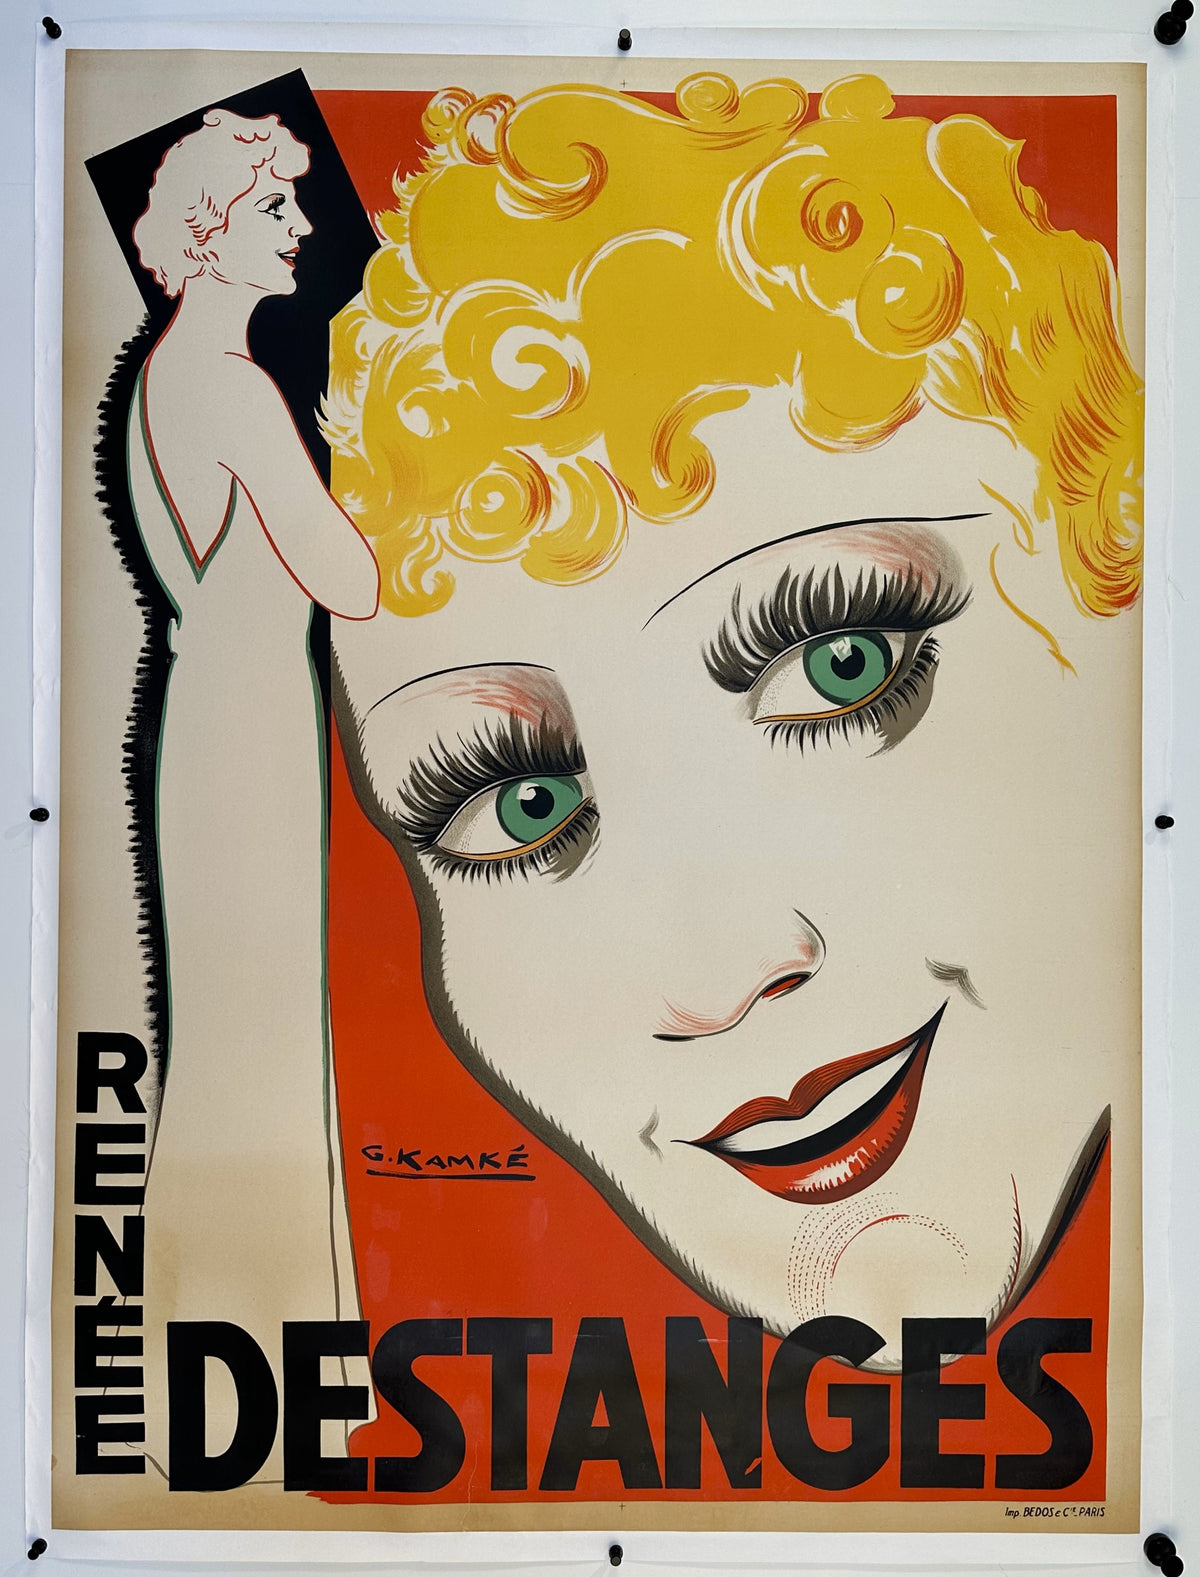 Renée Destanges - Authentic Vintage Poster